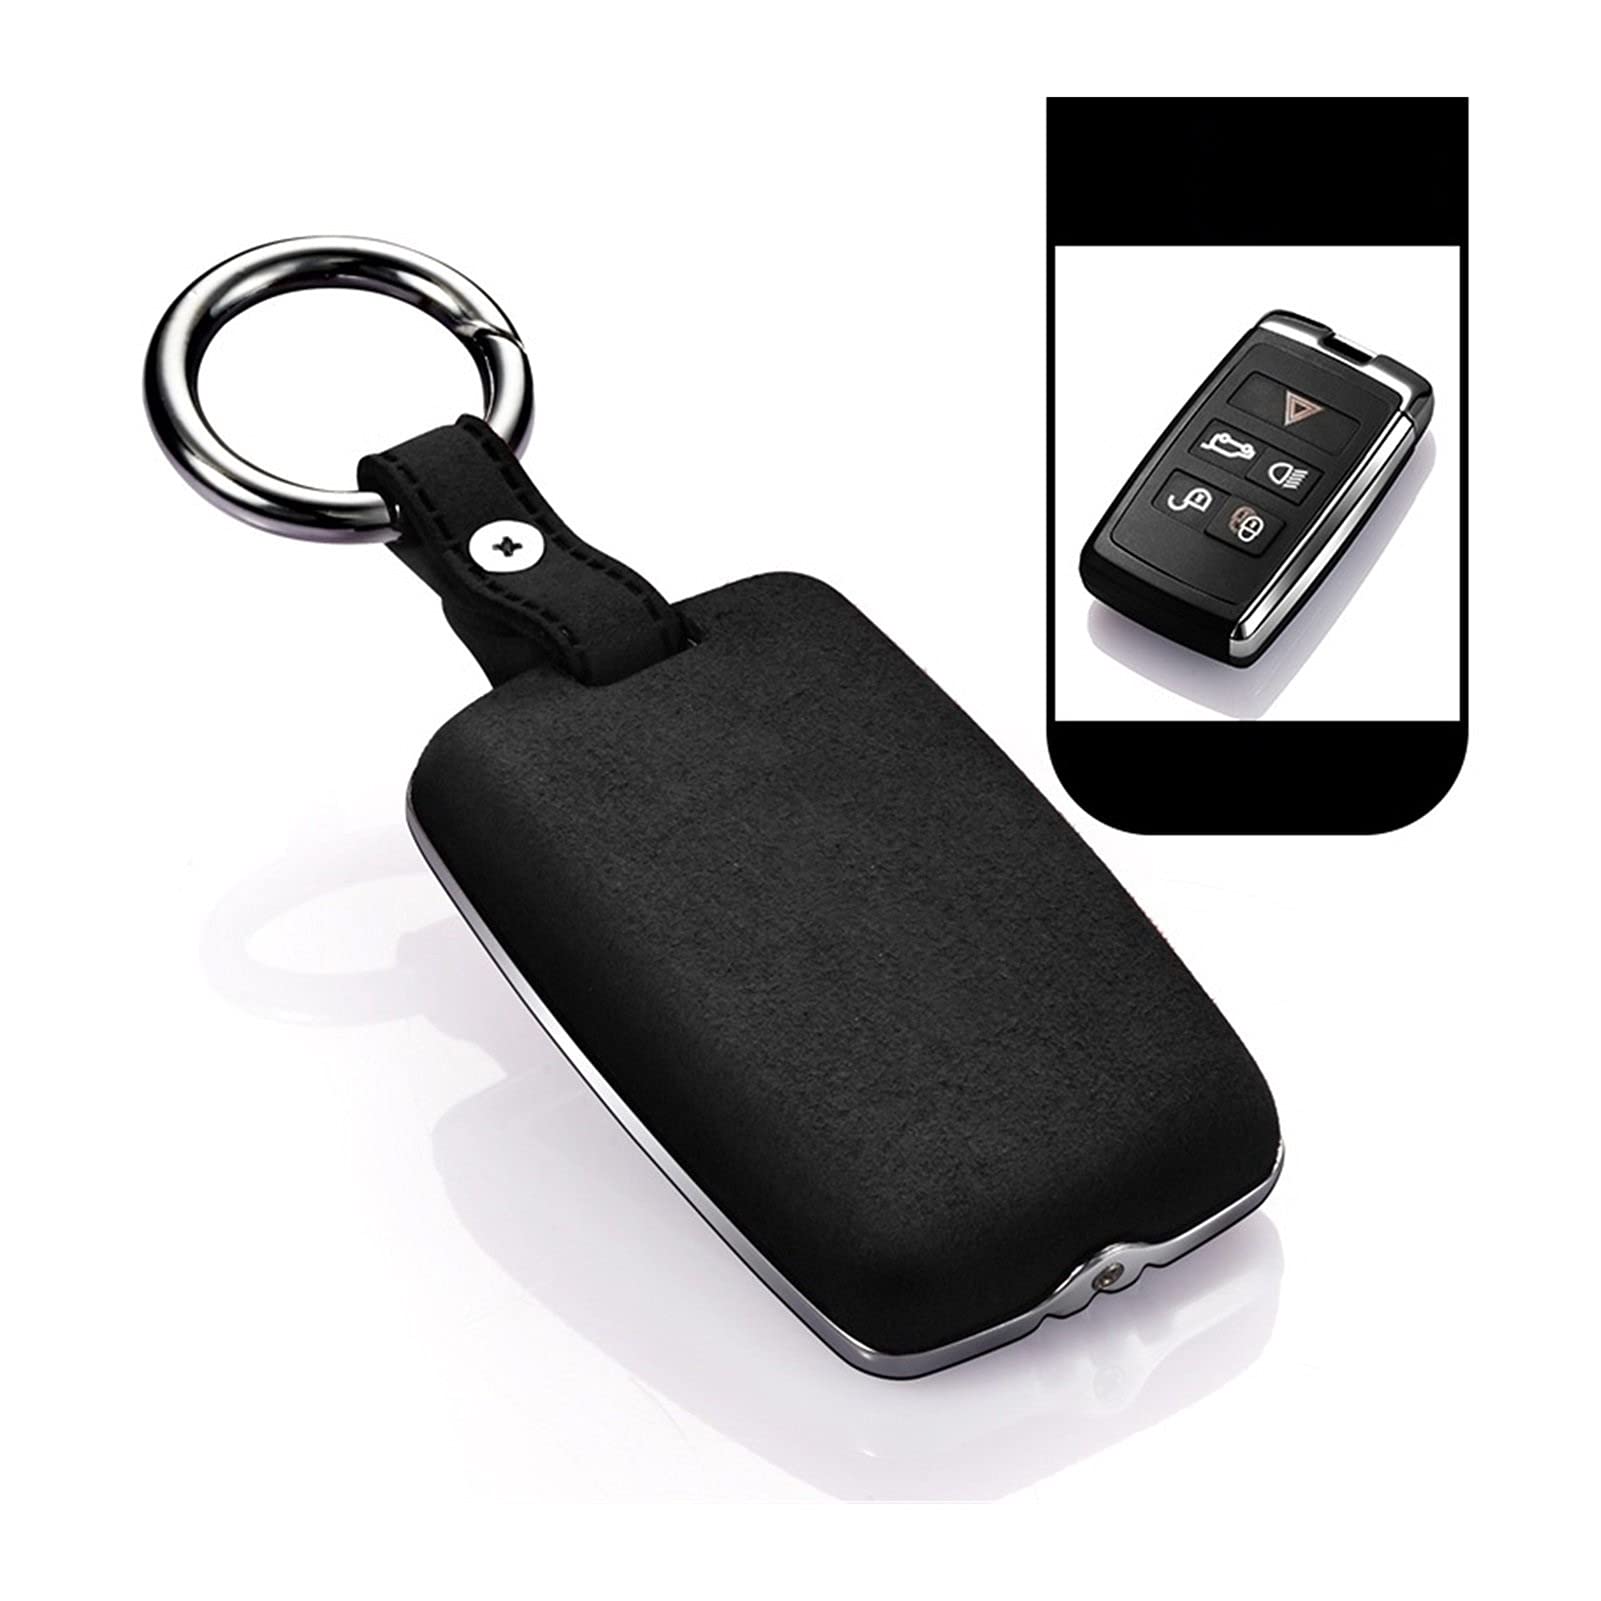 ZLLD Autoschlüssel Schlüssel Hülle Schlüsselanhänger Tragbare Mode Echtes Leder Auto Key Case Abdecktasche Für Land Rover Range Rover Sport Evoque Velar Discovery 5 Auto Schlüssel (Farbe : C)